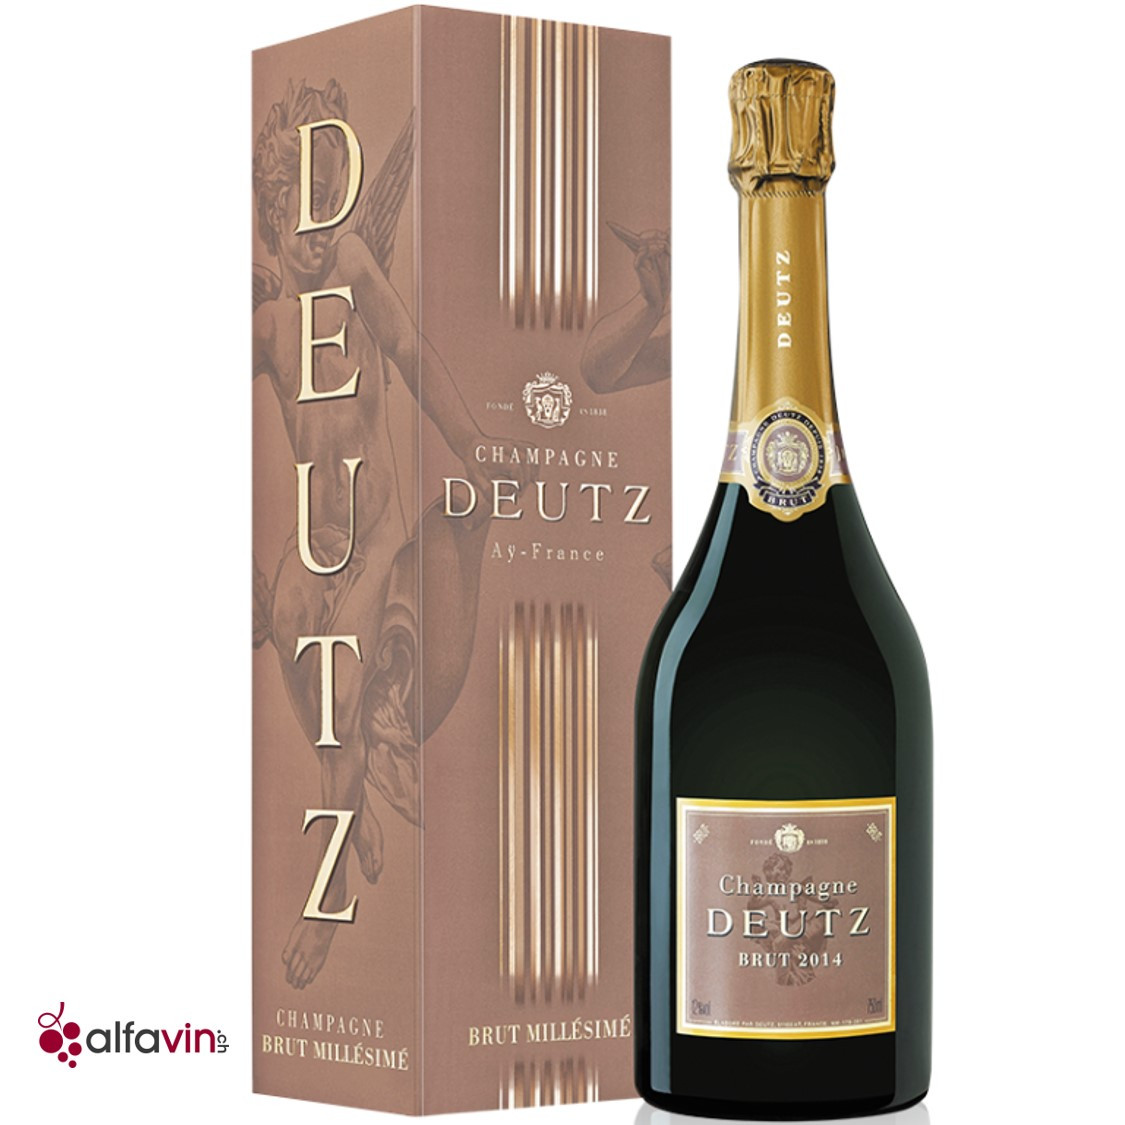 Champagne Deutz Brut Millésimé 2014